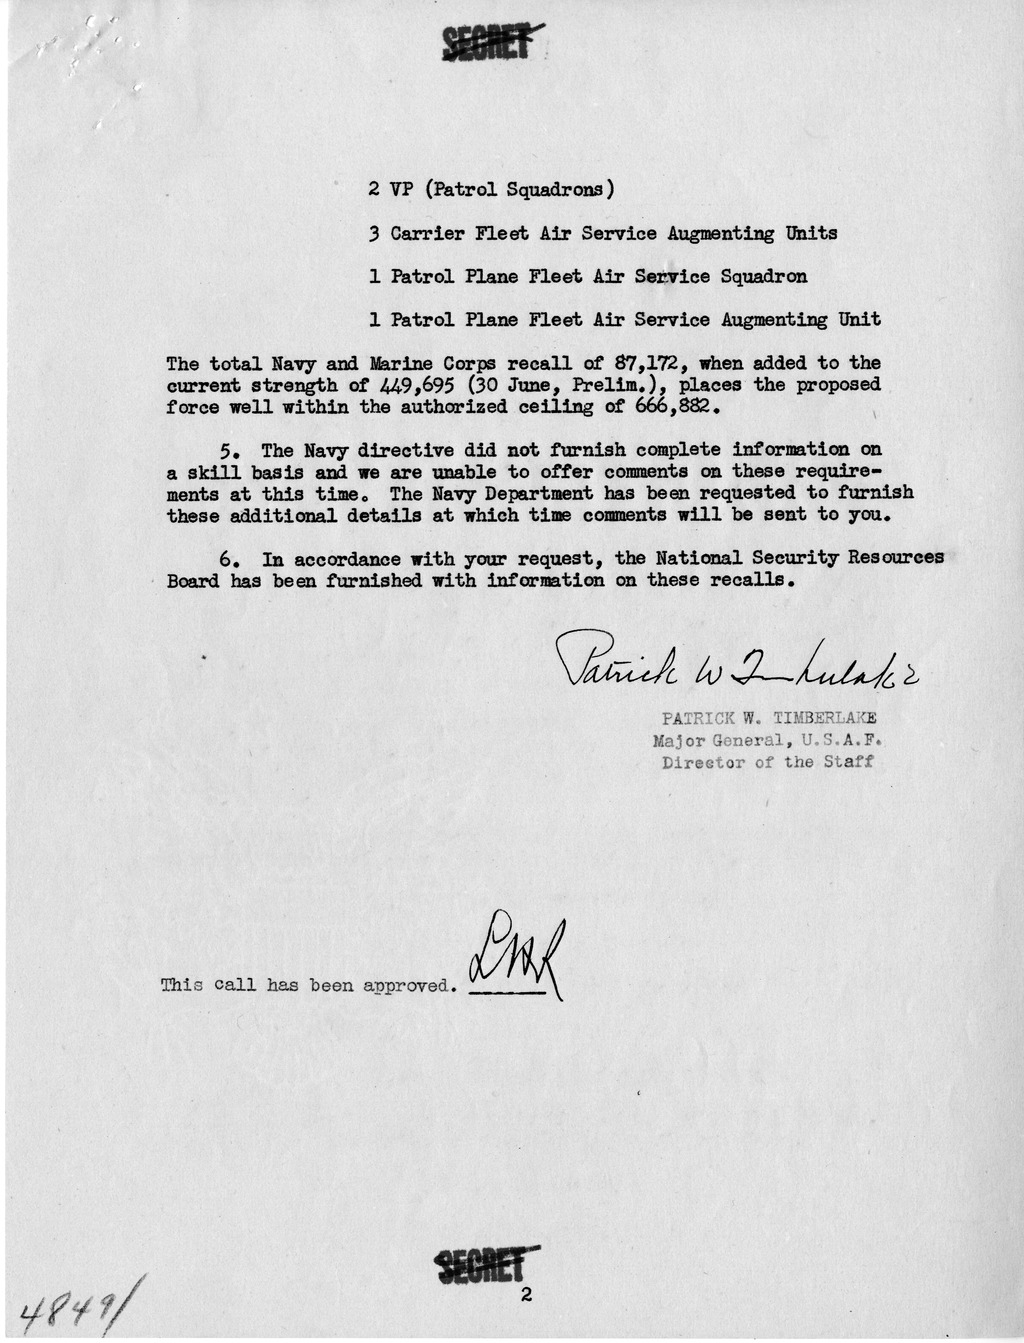 Memorandum from Major General Patrick Timberlake to Secretary of Defense Louis Johnson